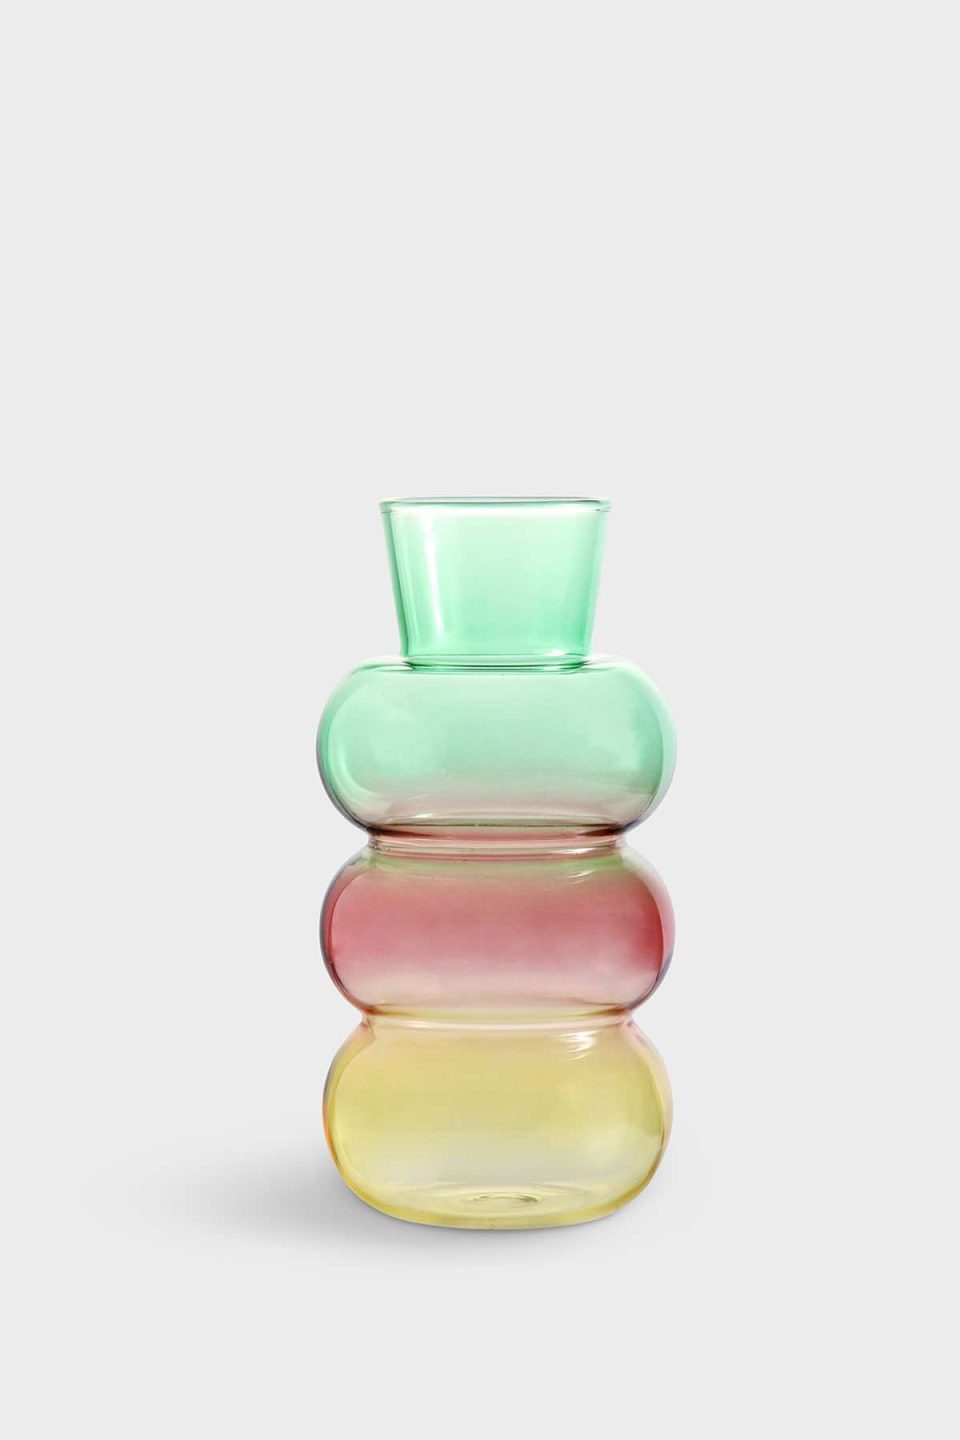 Na slici je prikazana staklena vaza u bojama koje se prelijevaju od žute na dnu preko crvene u sredini do zelene na vrhu. Vaza je trbušasta na dnu, ima dva zadebljanja u sredini, a na vrhu se otvara konusno.